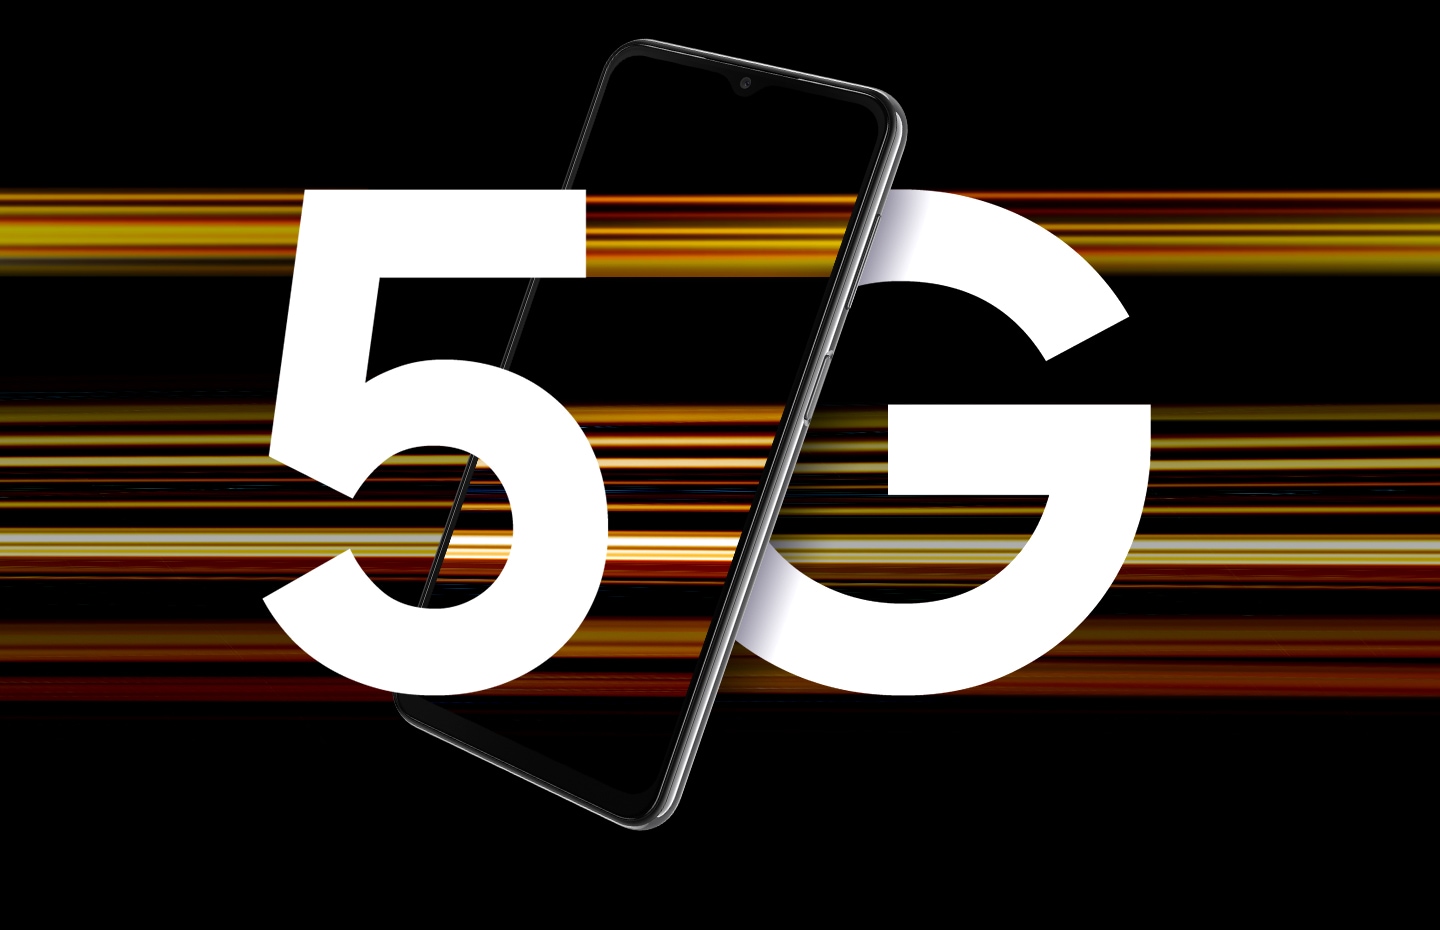 Uređaj Galaxy A23 5G prikazan je s tekstom 5G podijeljenim slovima pored uređaja. Okružuju ga šarene trake svjetla koje predstavljaju velike brzine 5G.